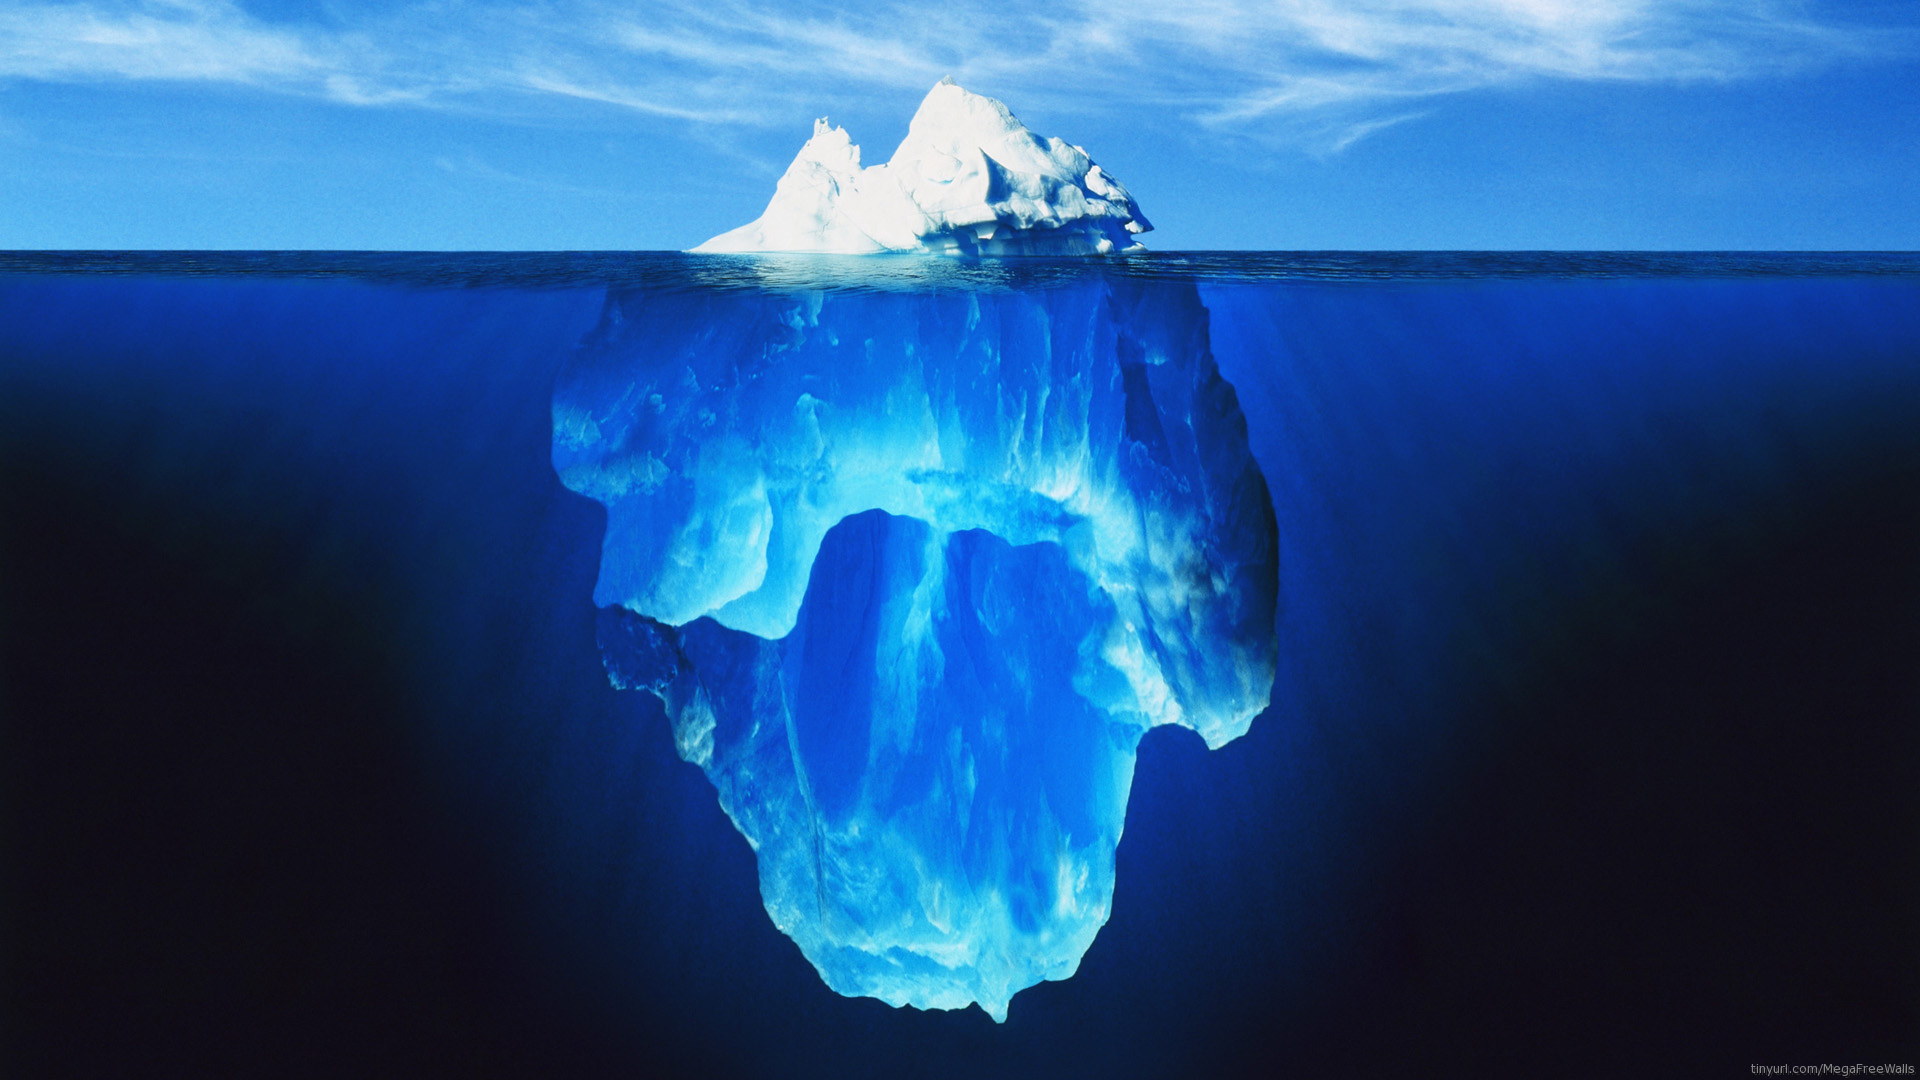 Tip of The Iceberg Titanic - wallpaper.